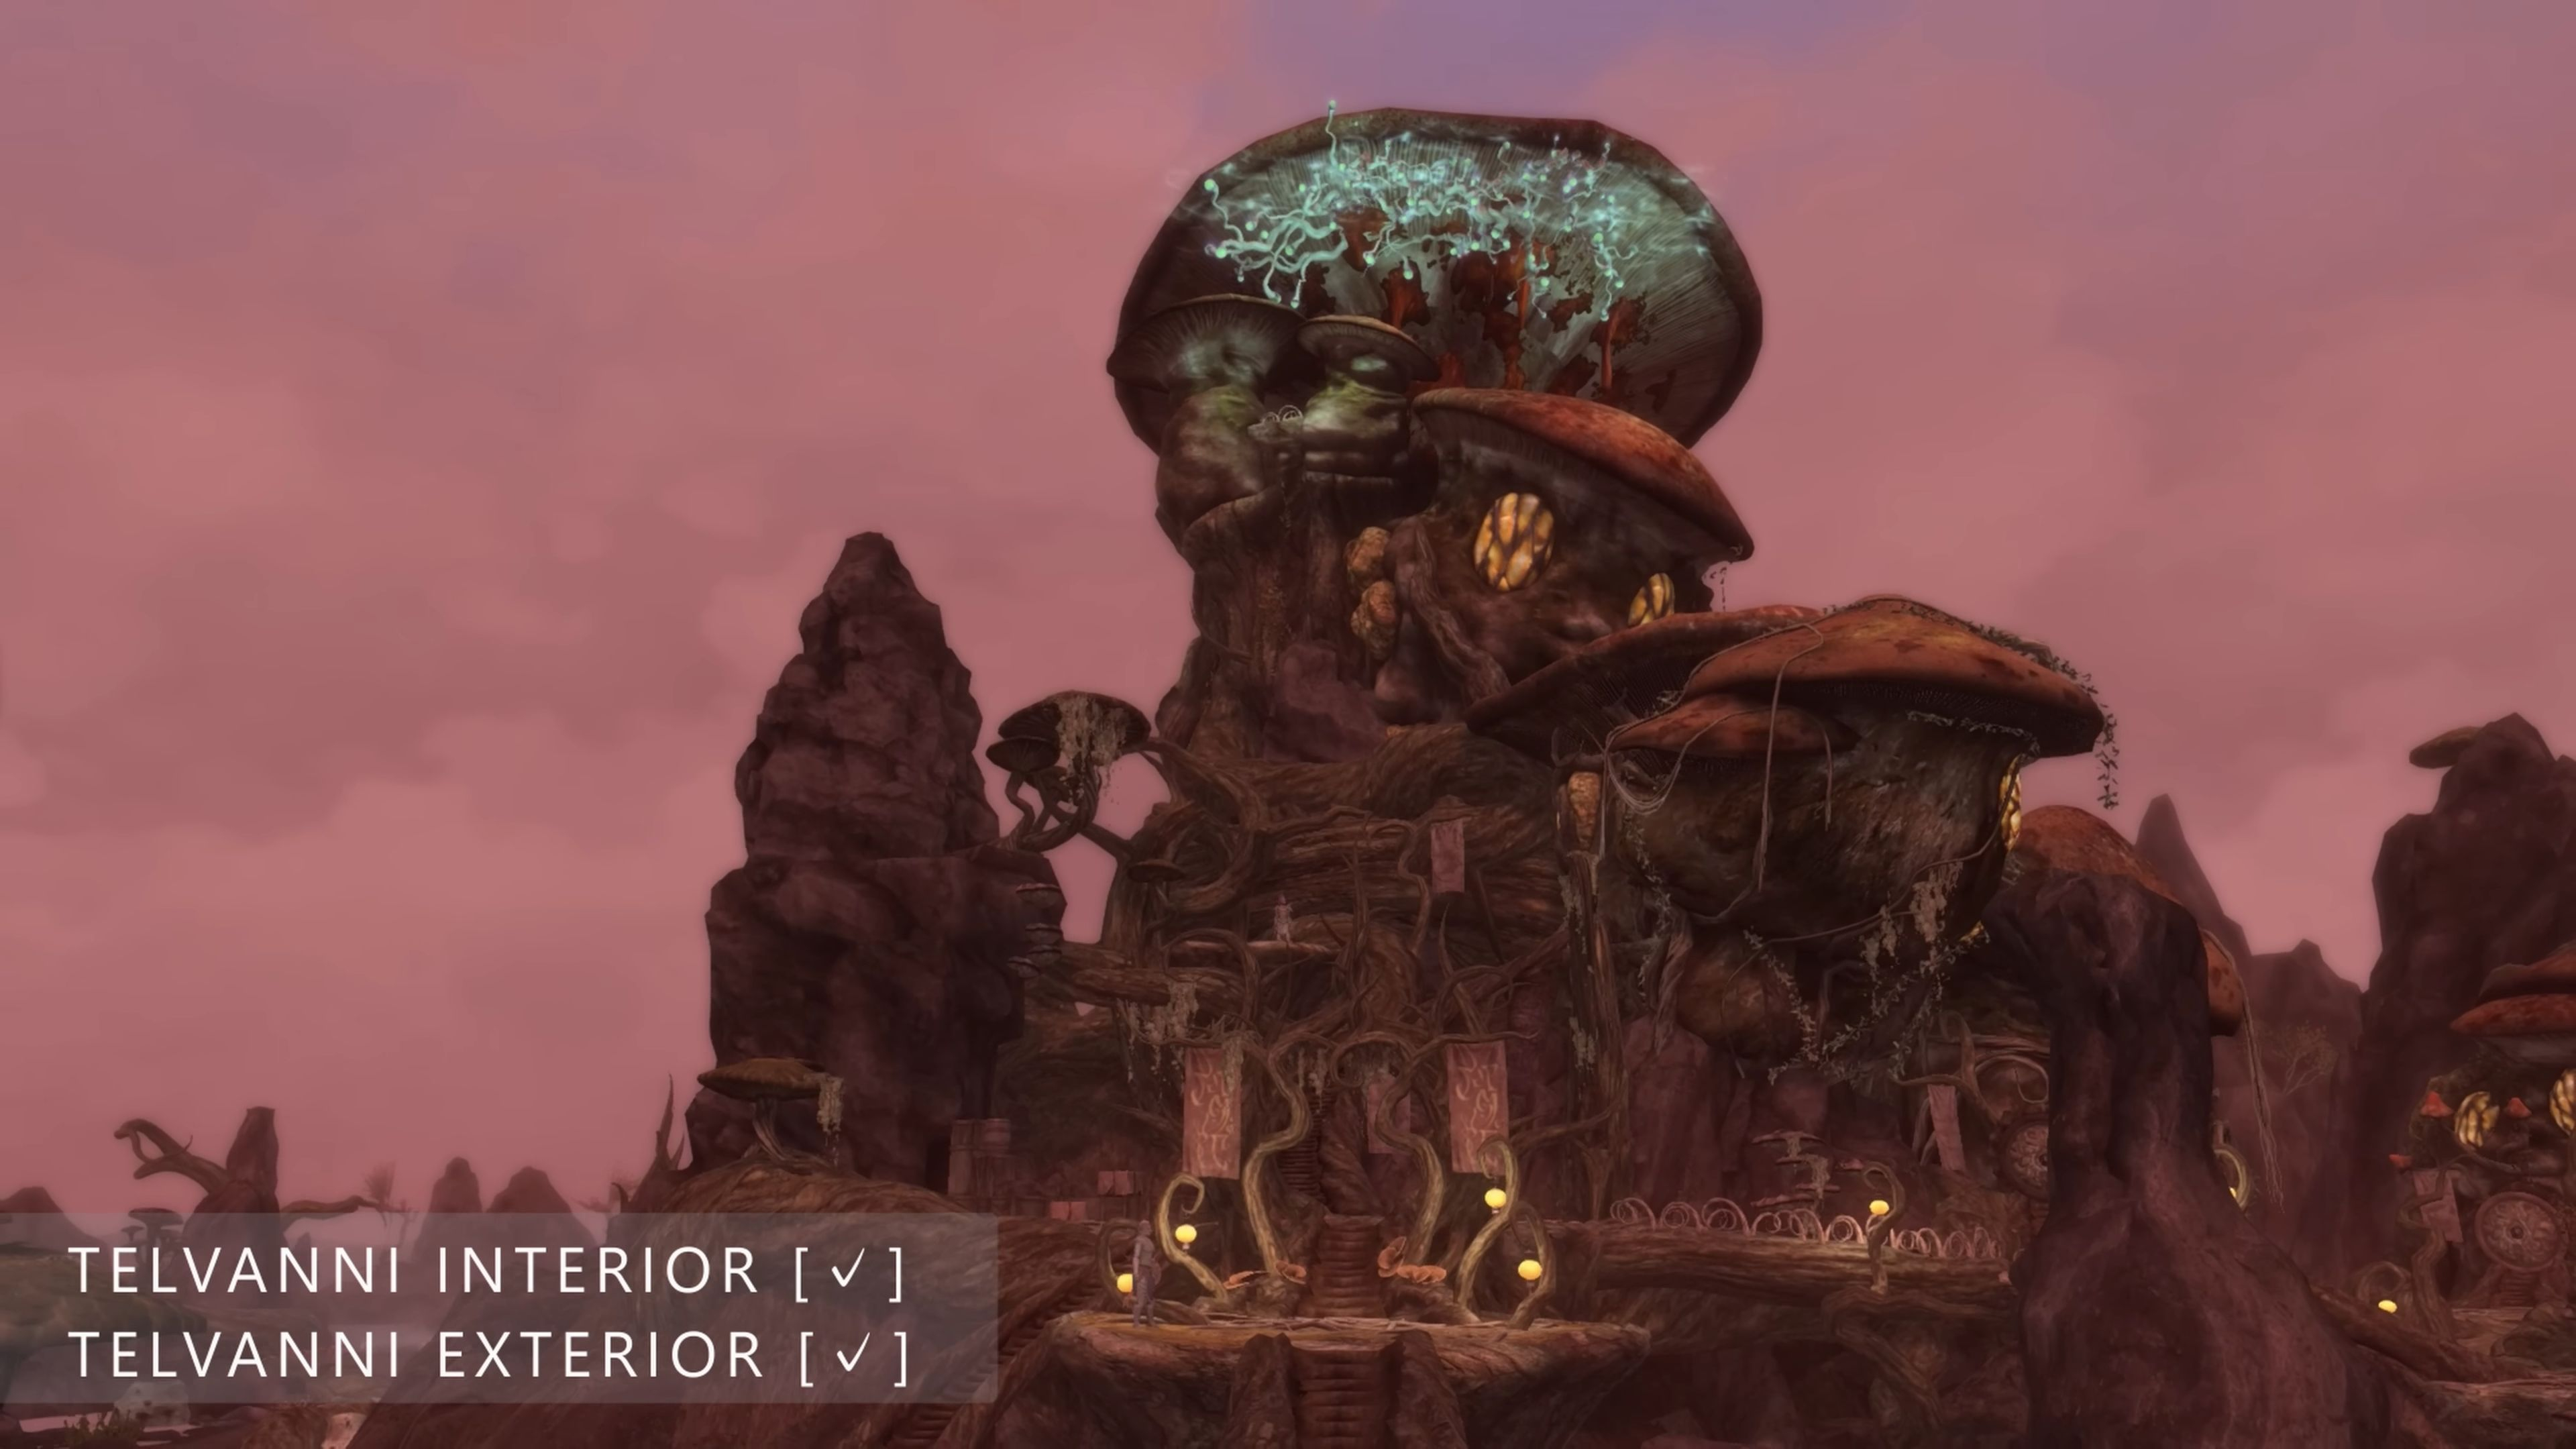 "Буду слишком занят этим, чтобы с нетерпением ждать TES VI": видео о прогрессе разработки фанатского ремейка Morrowind на движке Skyrim воодушевило игроков